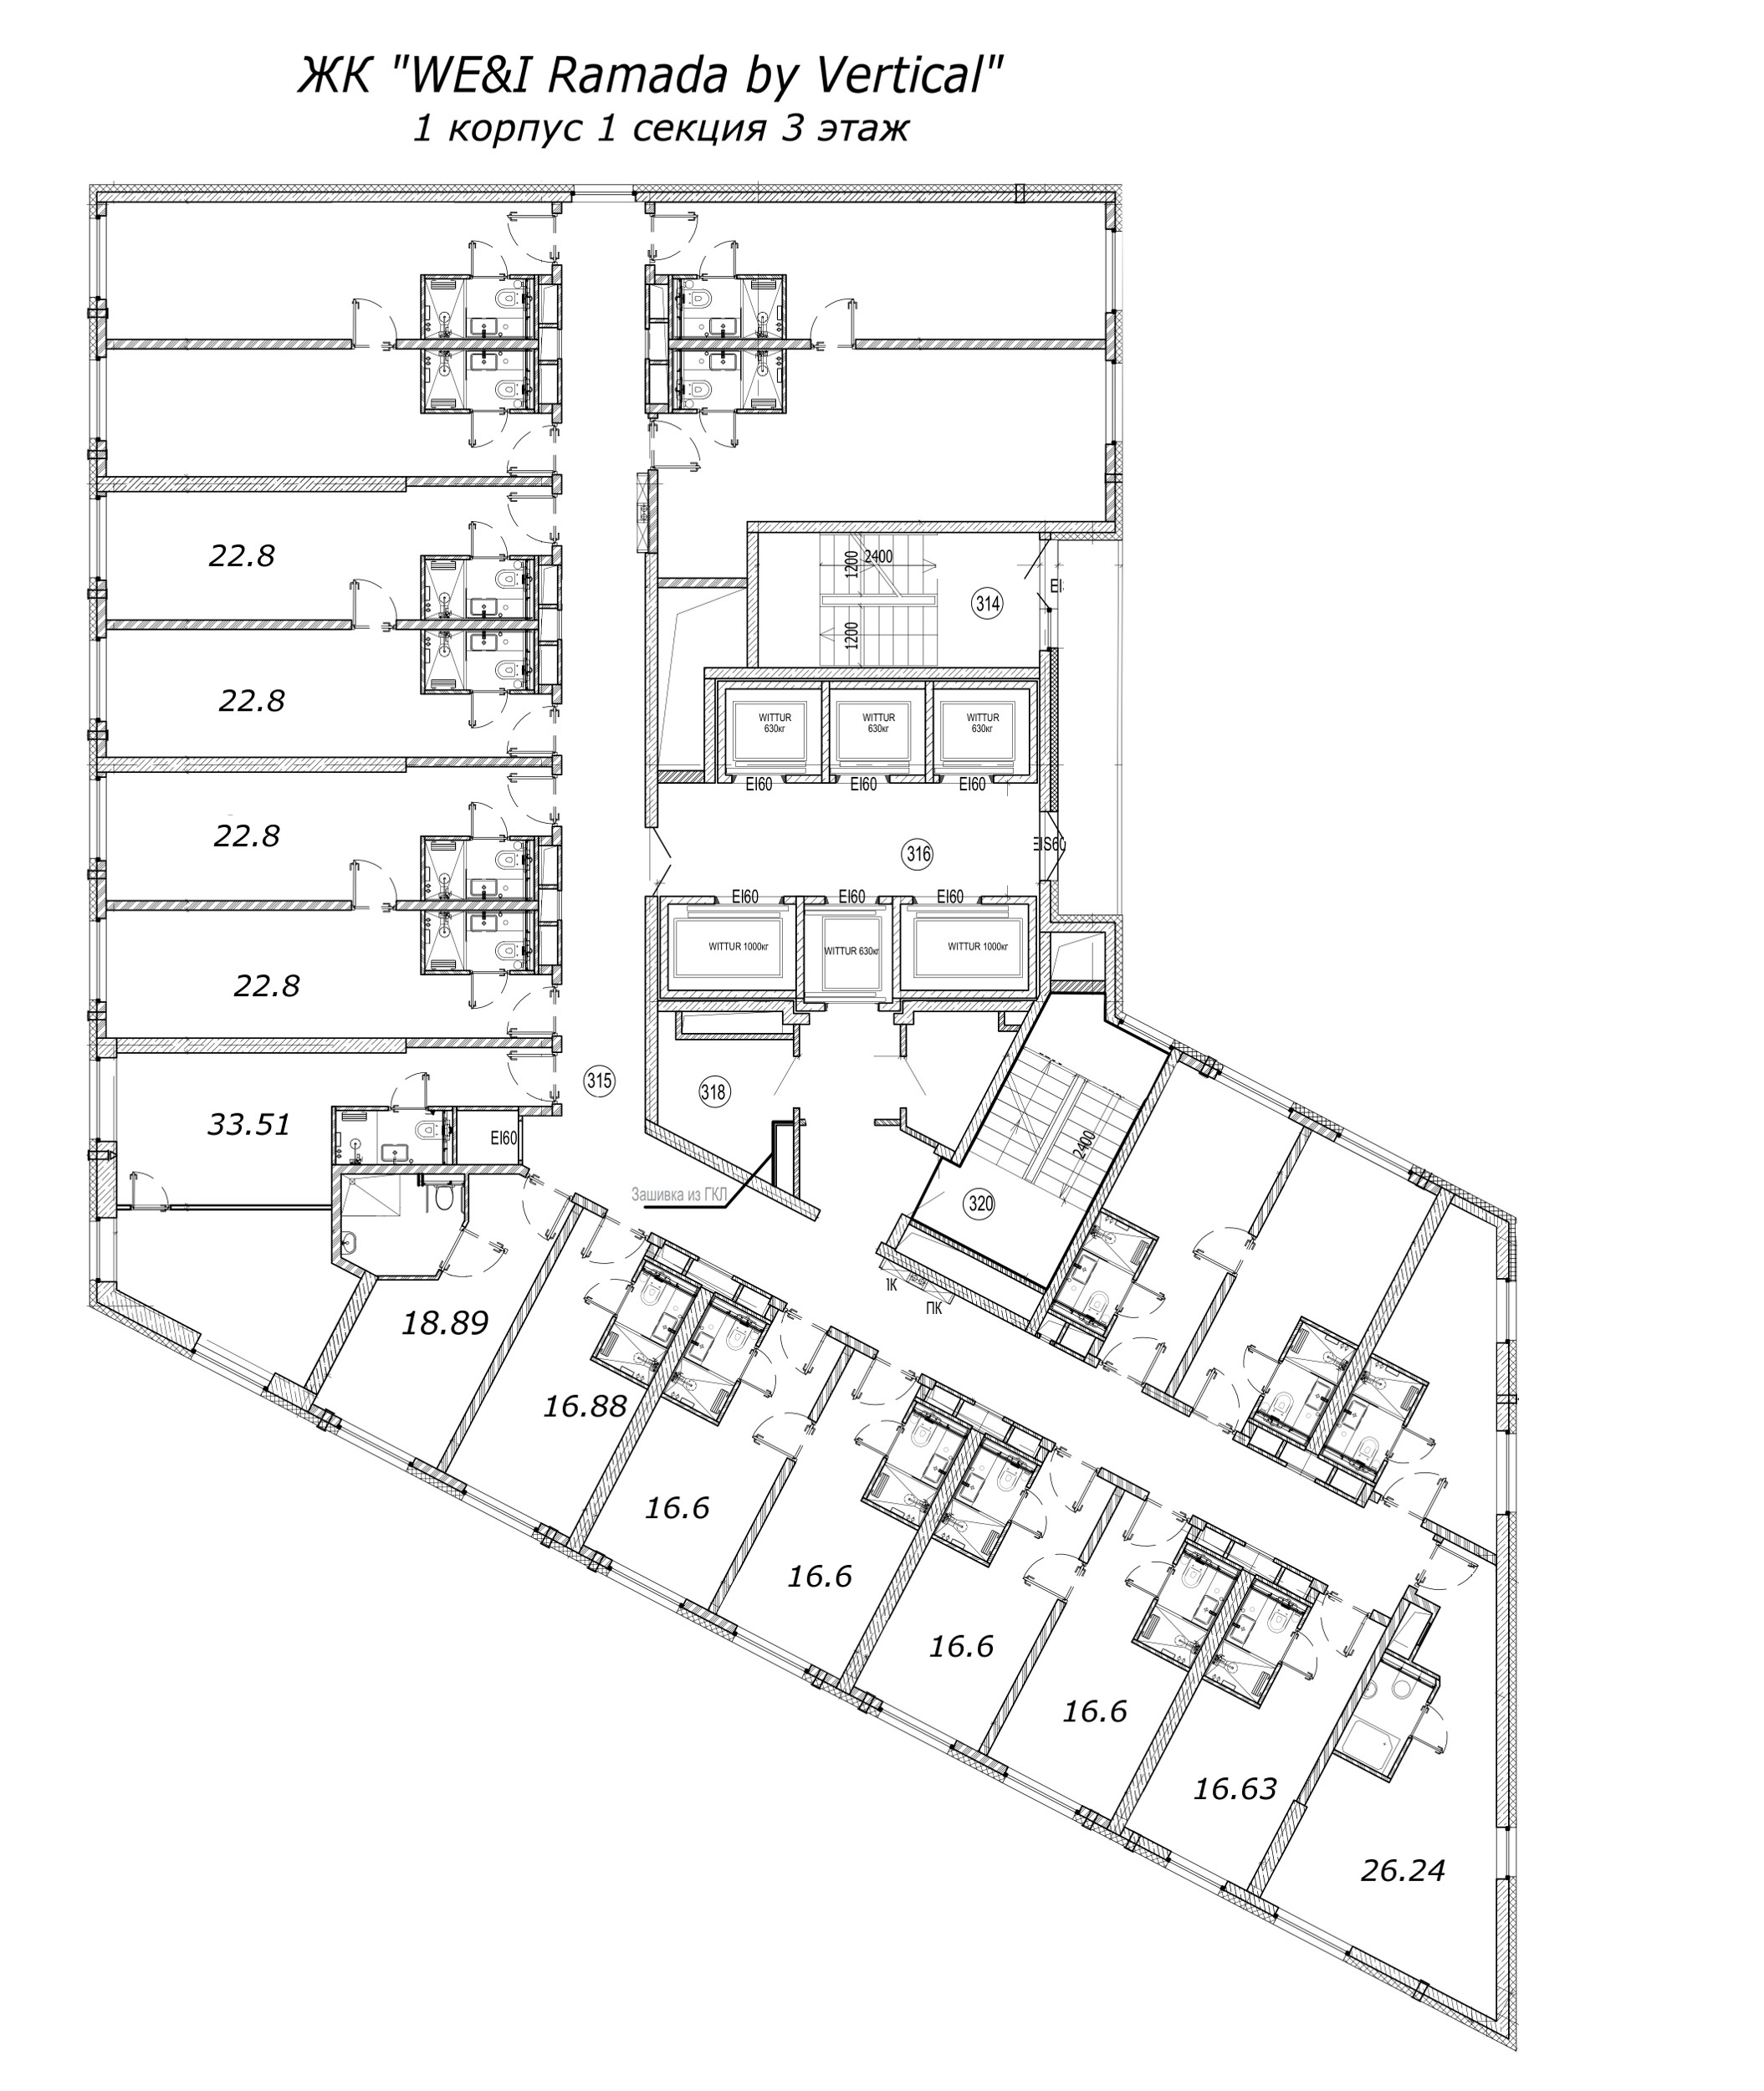 Квартира-студия, 15.19 м² в ЖК "WE&I Ramada by Vertical" - планировка этажа